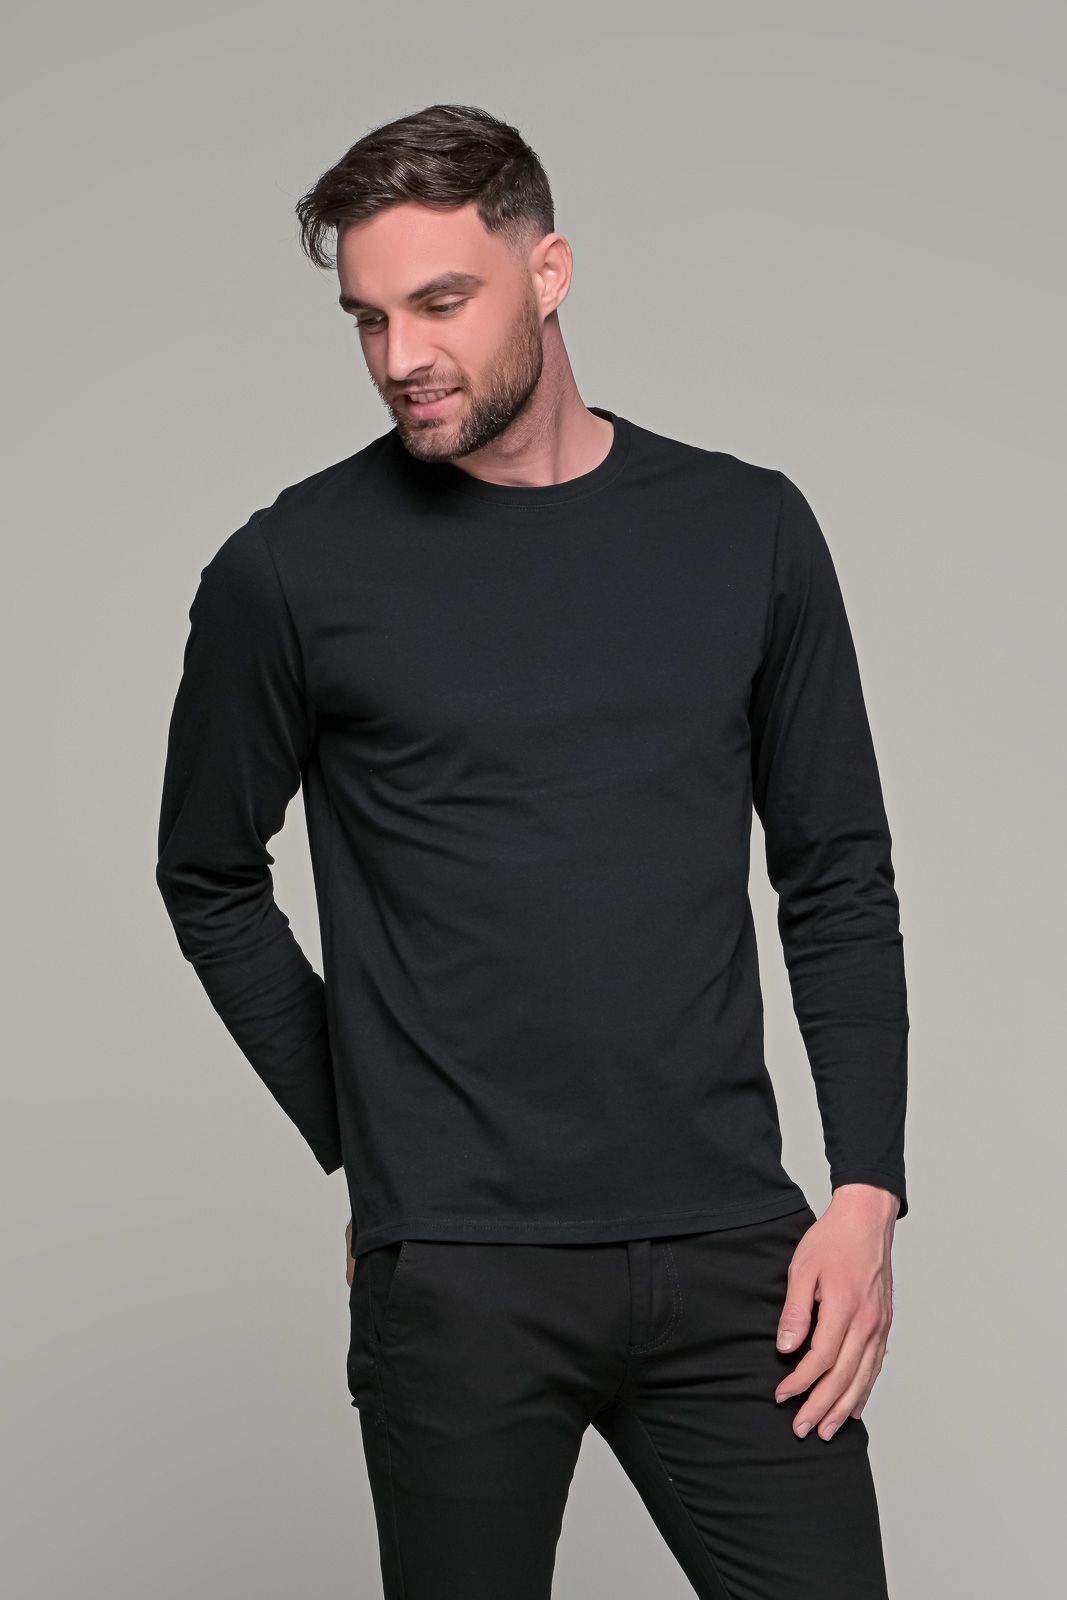 Μαύρη ανδρική μακρυμάνικη μπλούζα μονόχρωμη